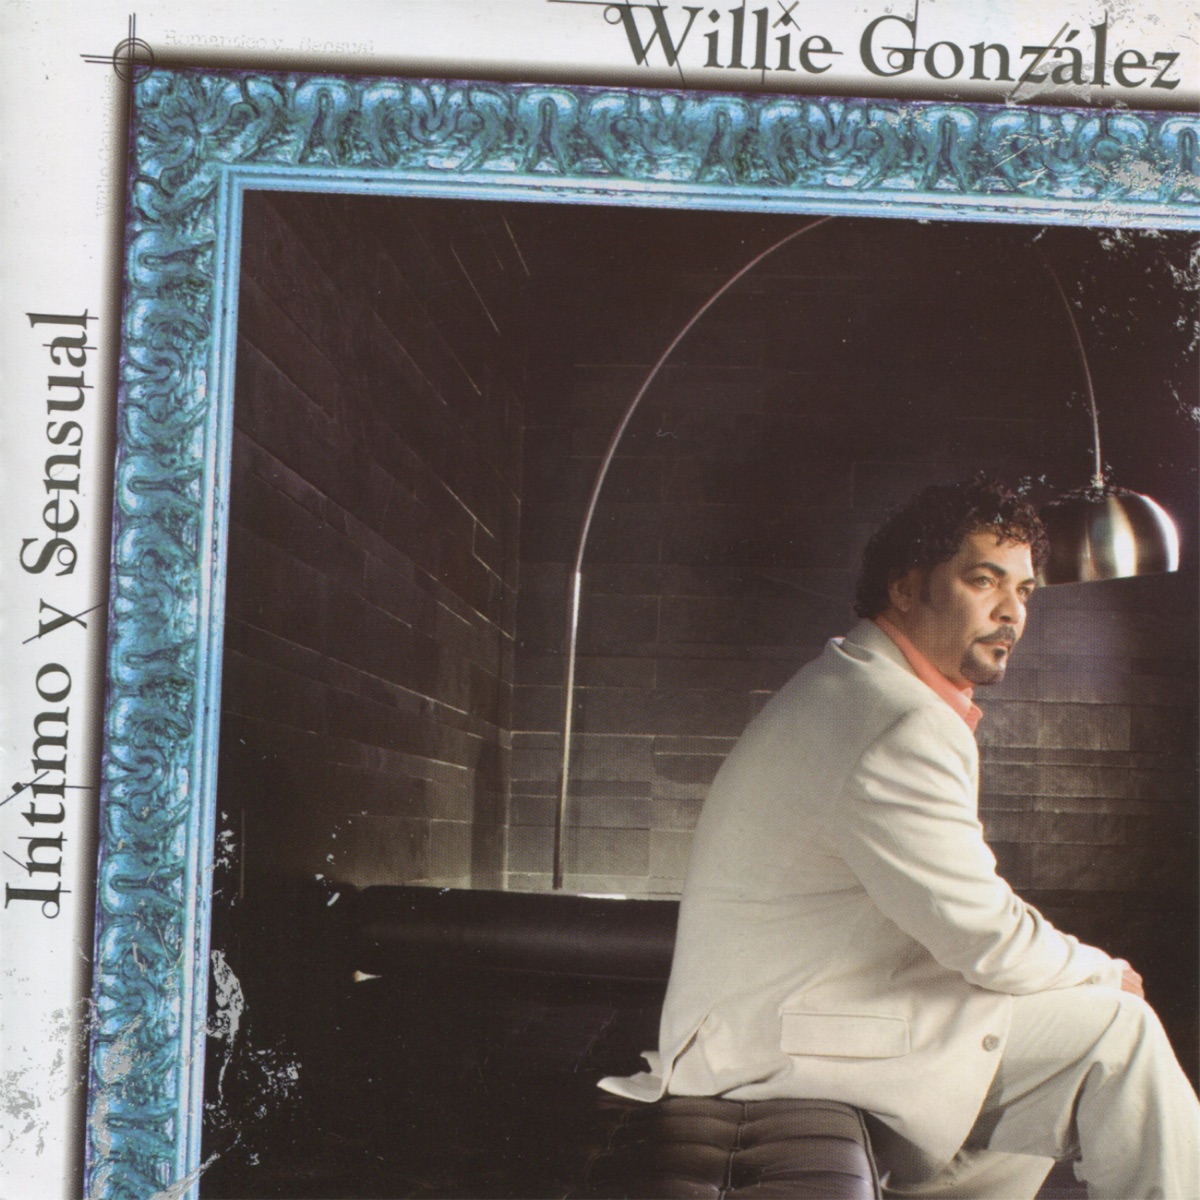 Willie González: Grandes Éxitos by Willie González on Apple Music